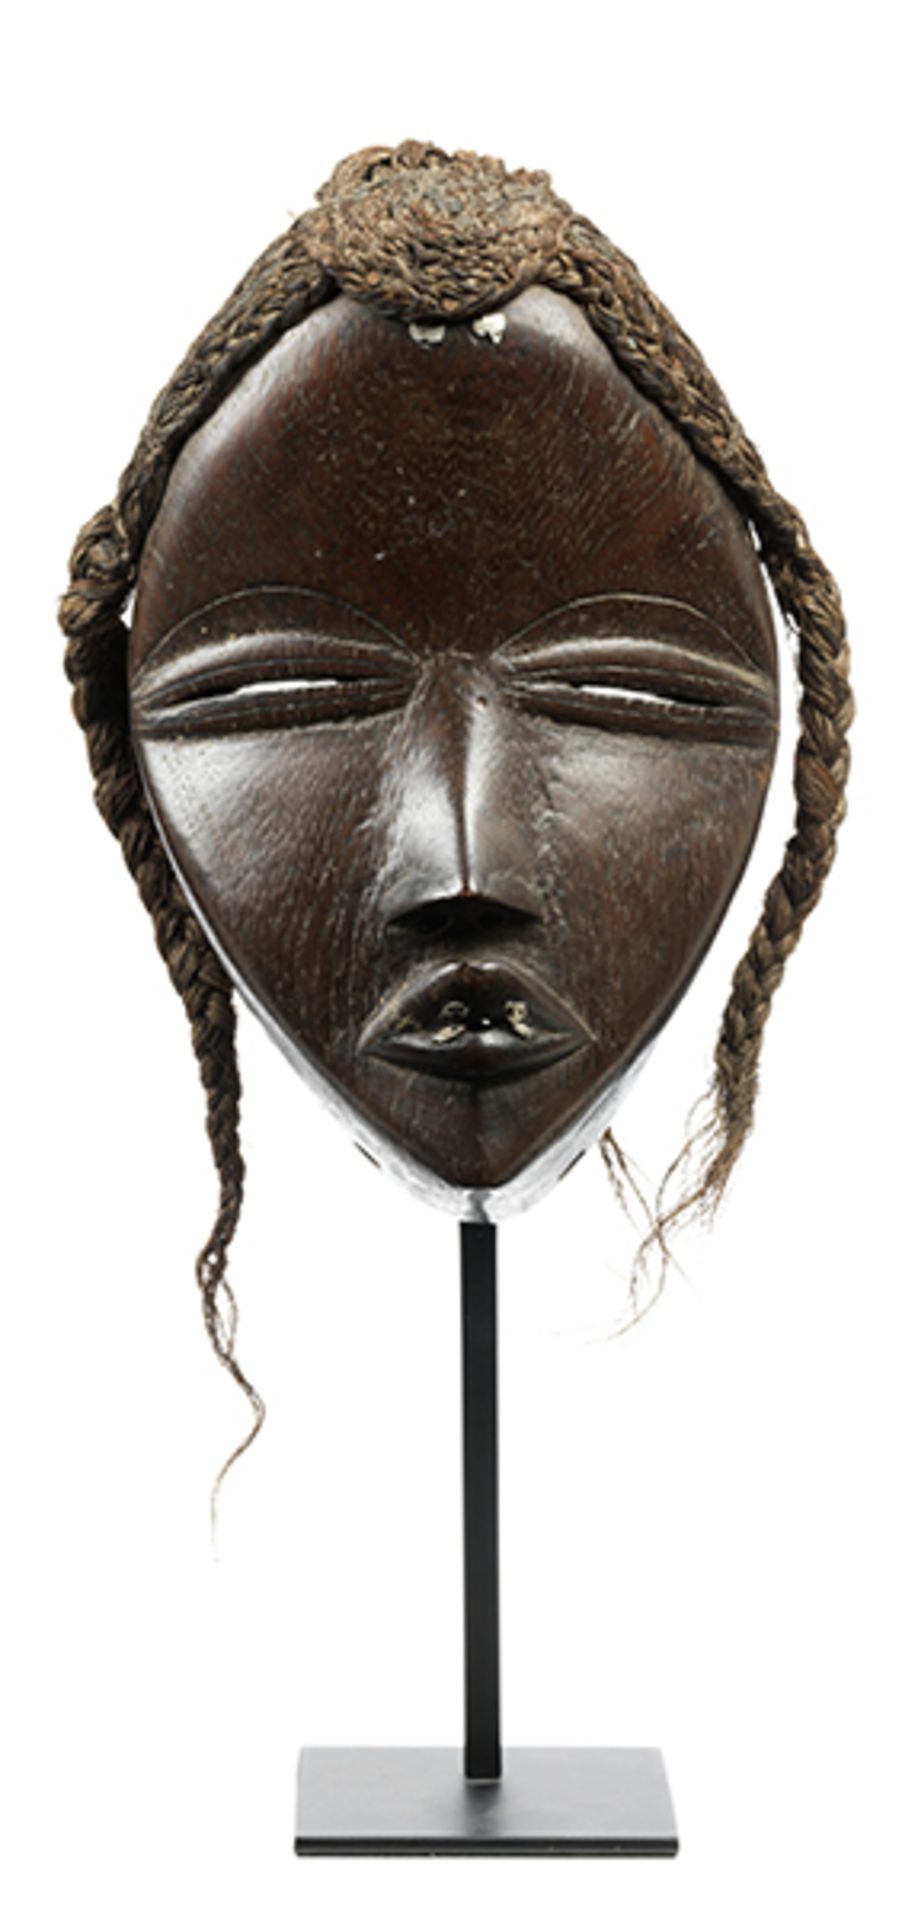 Dan-Maske Höhe: 22,5 cm. Auf Metallständer montiert, Gesamthöhe: 35,5 cm. Maske aus dunklem Holz.